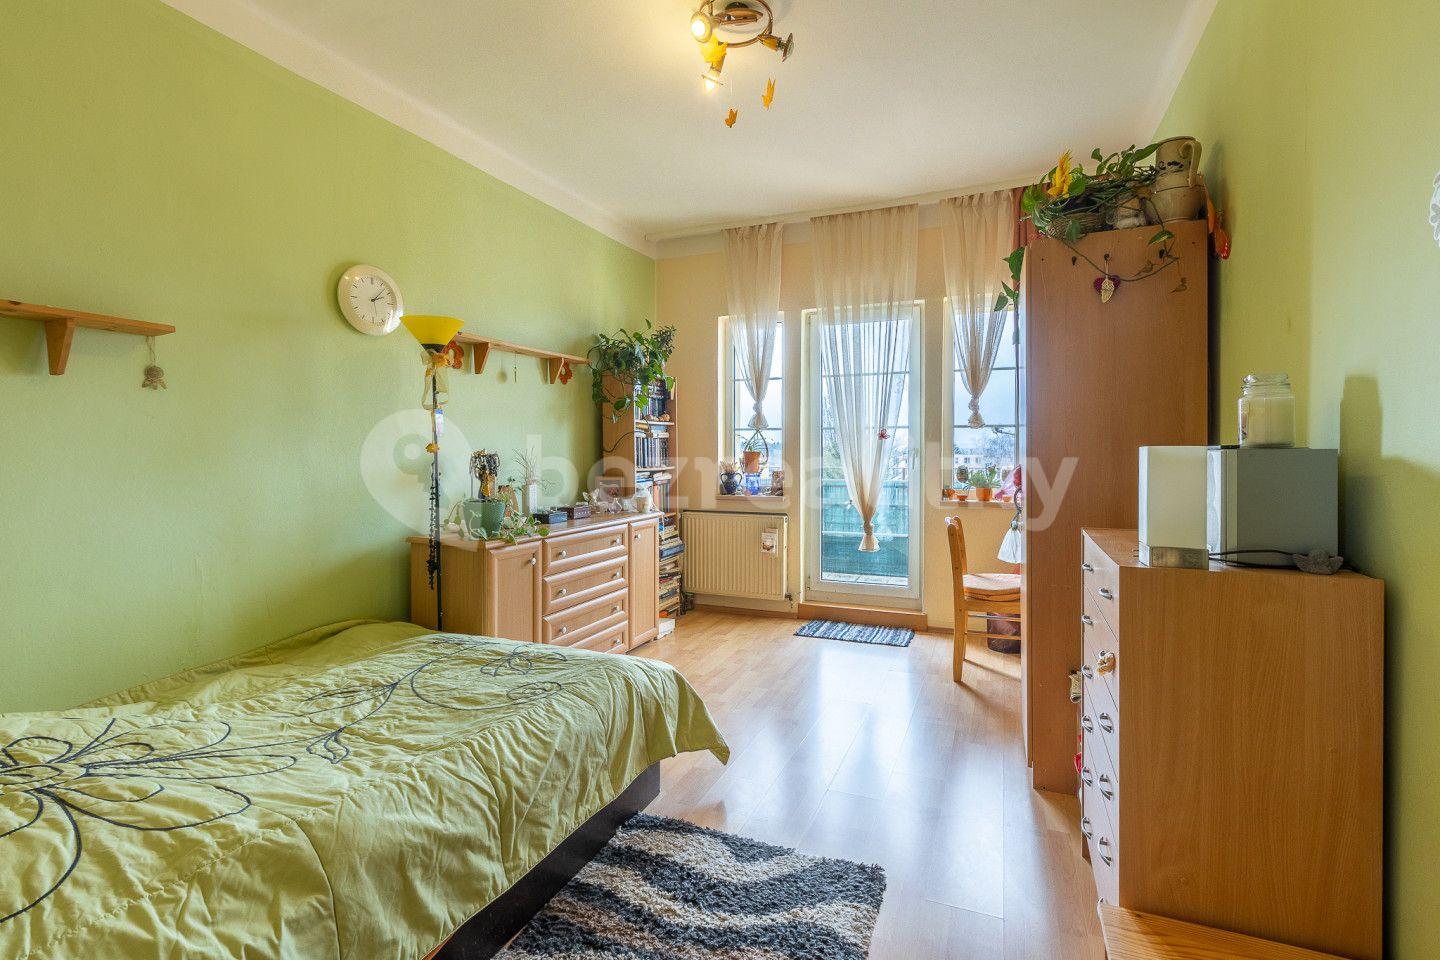 5 bedroom flat for sale, 187 m², Americká, Františkovy Lázně, Karlovarský Region